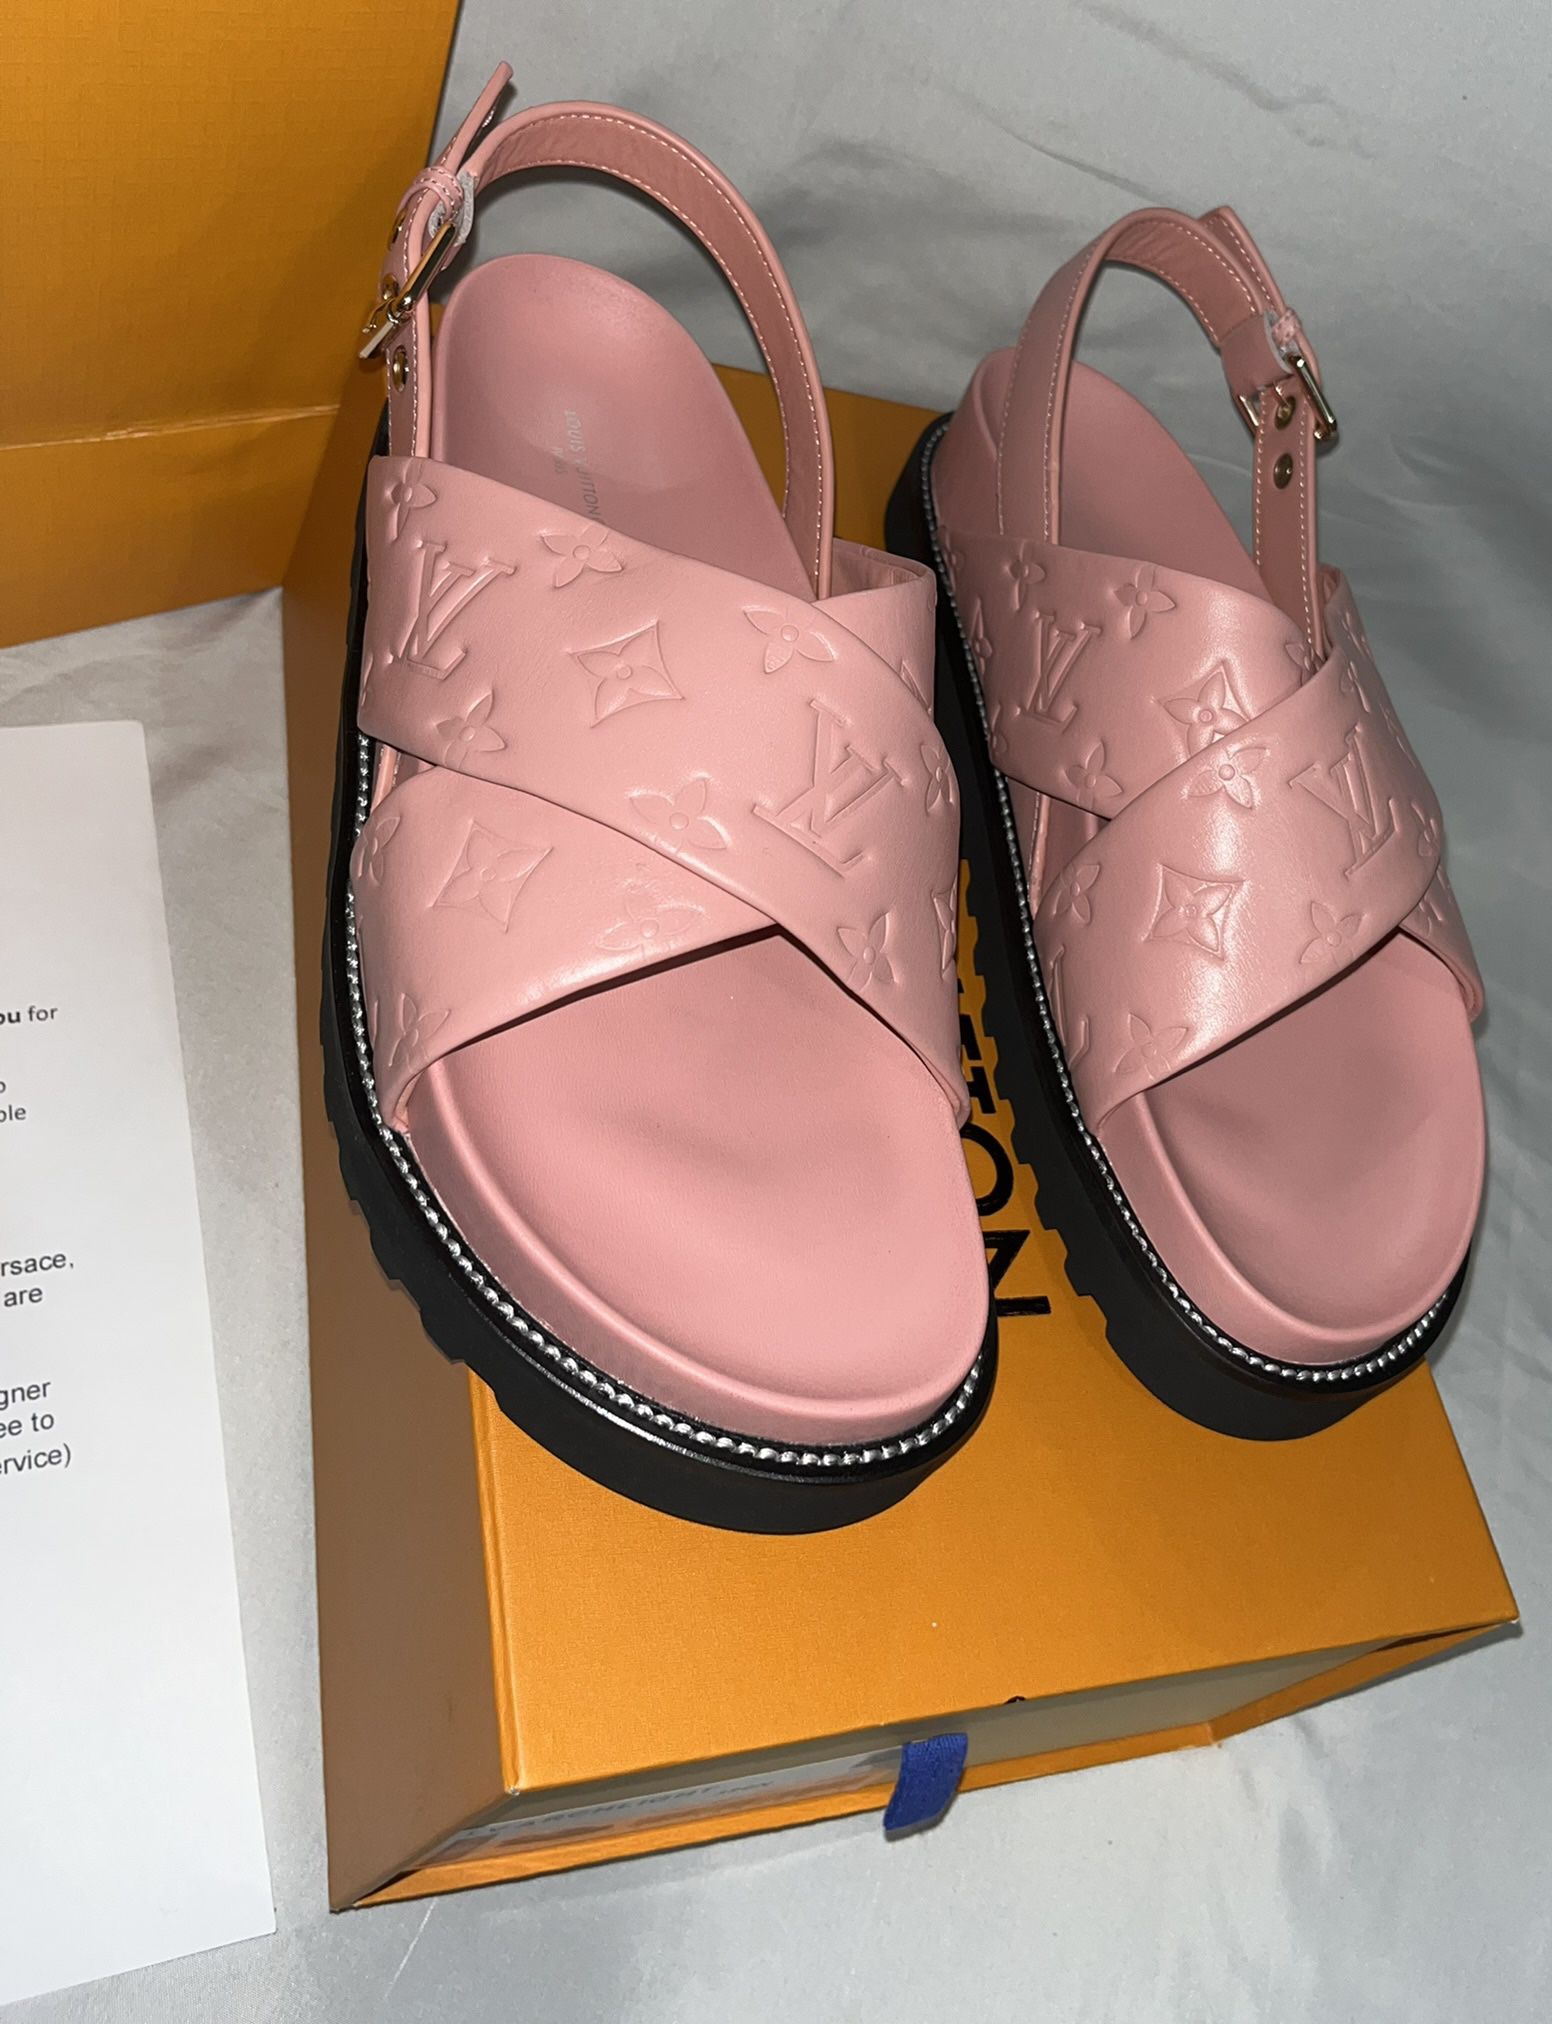 Shop Louis Vuitton Women's Pink More Sandals